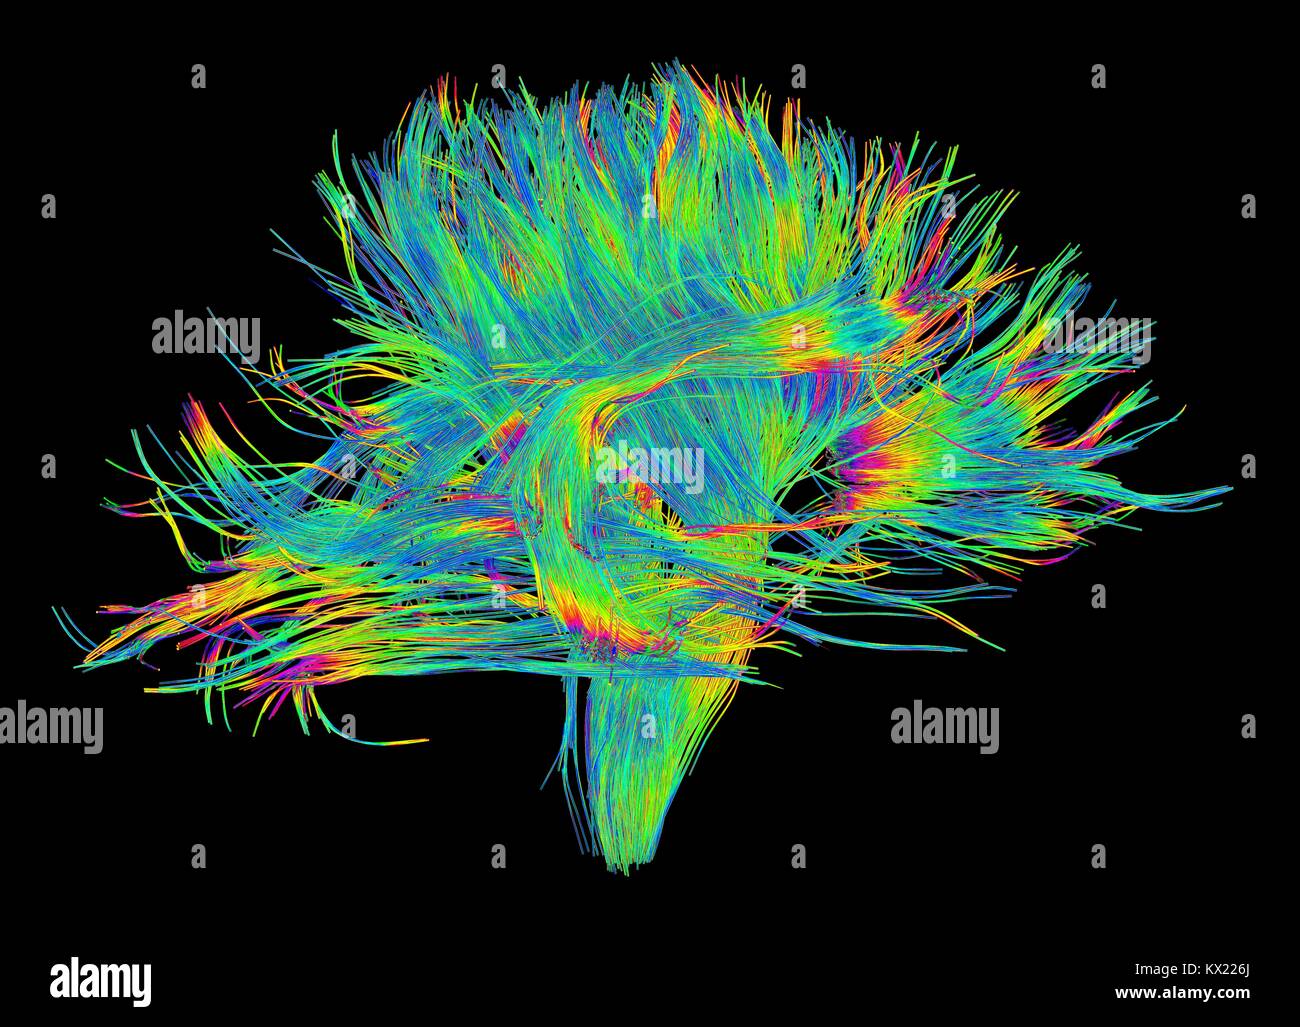 Weißer Fasern. Computer verbesserte 3D-Diffusion Spectral Imaging (DSI) Scan der Bündel von weißer Substanz Nervenfasern im Gehirn. Die Fasern nervensignale zwischen Gehirn Regionen übertragen und zwischen dem Gehirn und dem Rückenmark. Diffusion Spektrum der Bildgebung (DSI) ist eine Variante der Magnetresonanztomographie (MRT), in die ein magnetisches Feld bildet die Wasser in Neuron Fasern enthalten, damit Karten ihrer Criss-crossing Patterns. Eine ähnliche Technik namens Diffusion Tensor Imaging (DTI) wird auch verwendet, um neuronale Daten der Fasern, die in der weißen Substanz des Gehirns zu erforschen. Beide Methoden ermöglichen die Zuordnung Ihrer Stockfoto